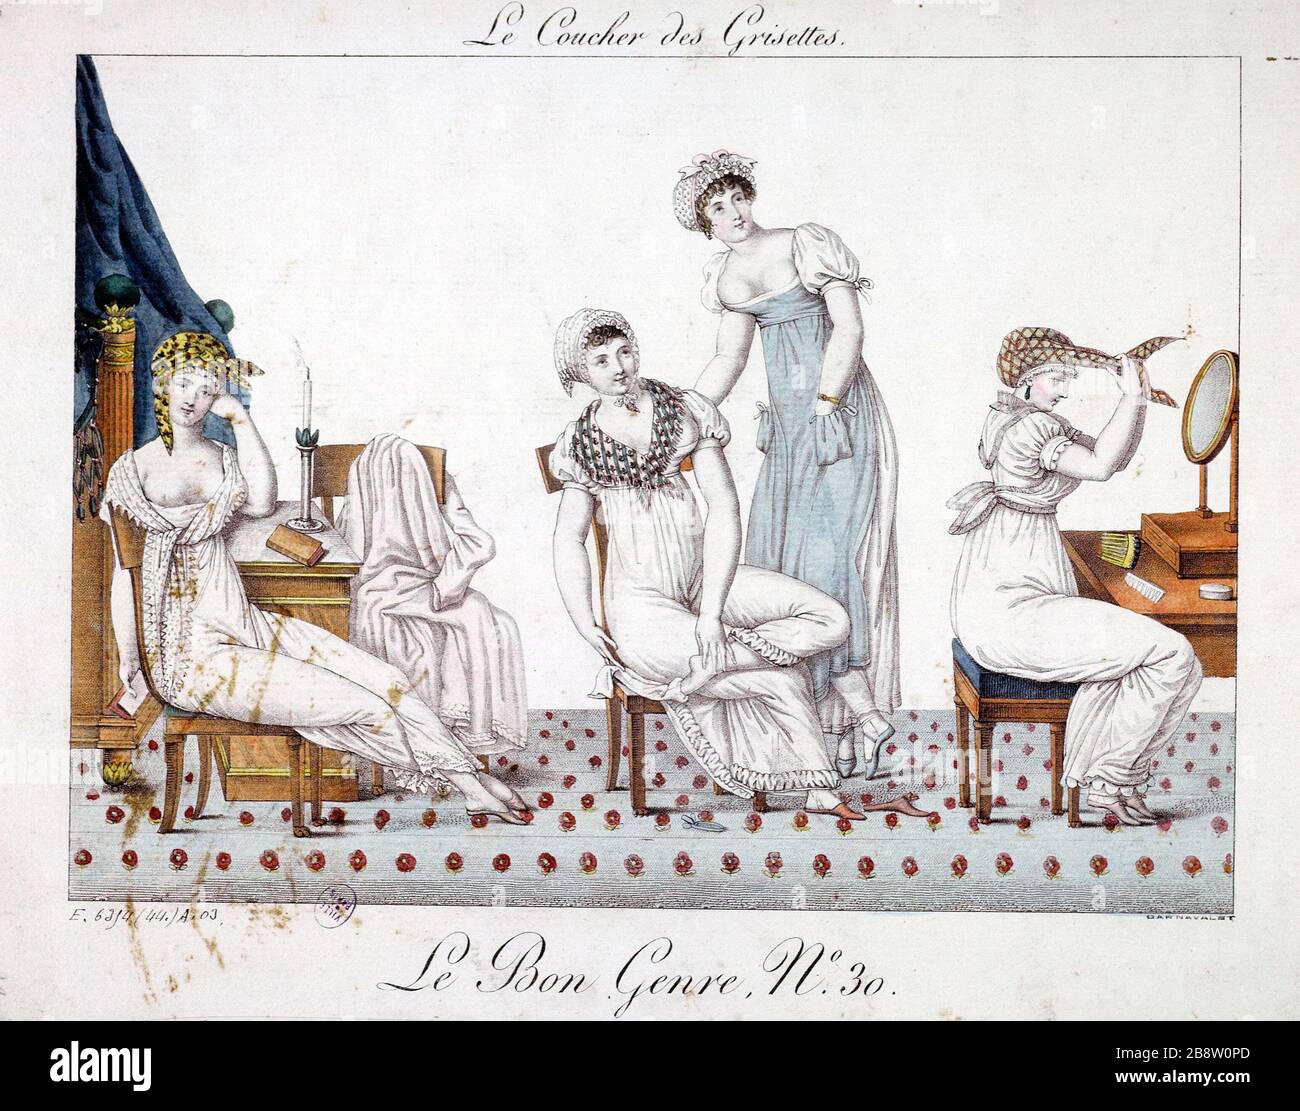 DER RICHTIGE TYP NUMMER 30 - DIE SONNENUNTERGANGS-GRISETTEN, "Le Bon Genre numéro 30" - "le coucher des Grisettes", "1807". Tiefdruck. Paris, musée Carnavalet. Stockfoto